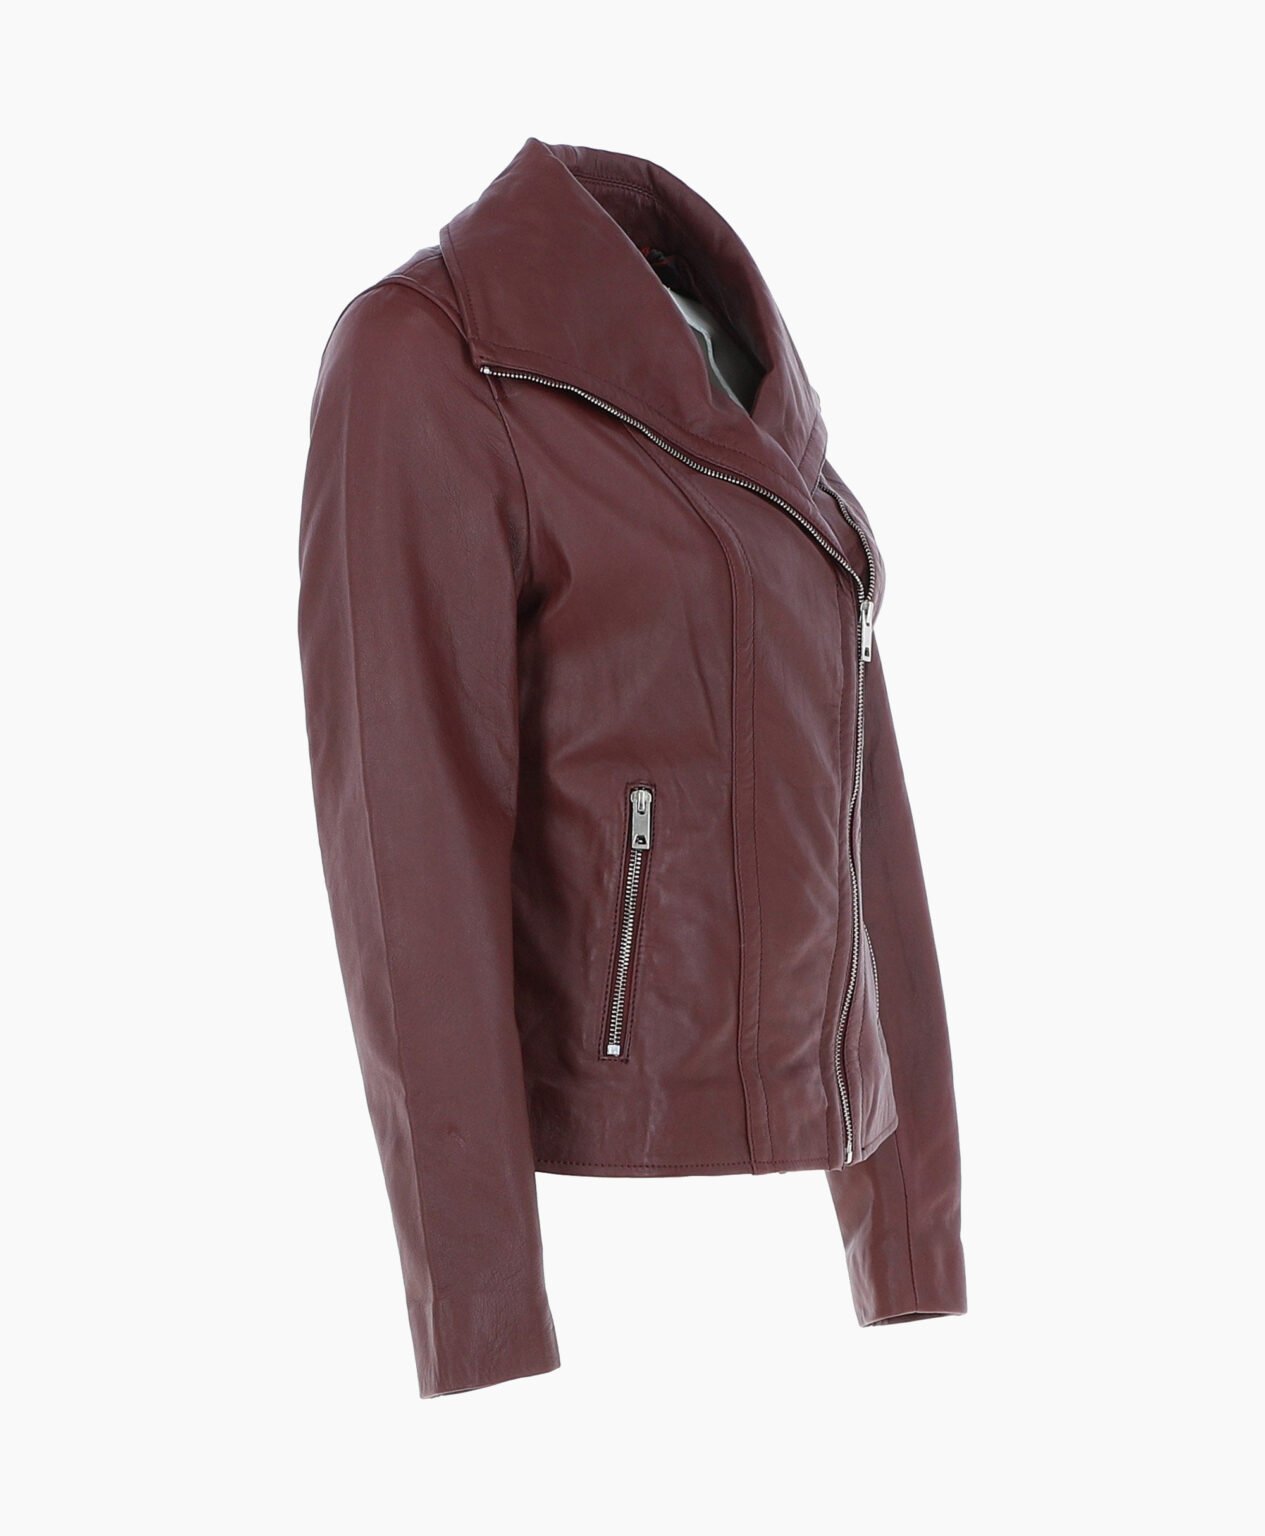 vogue-jacket-leather-jacket-fashion-collar-oxblood-shelby-image203